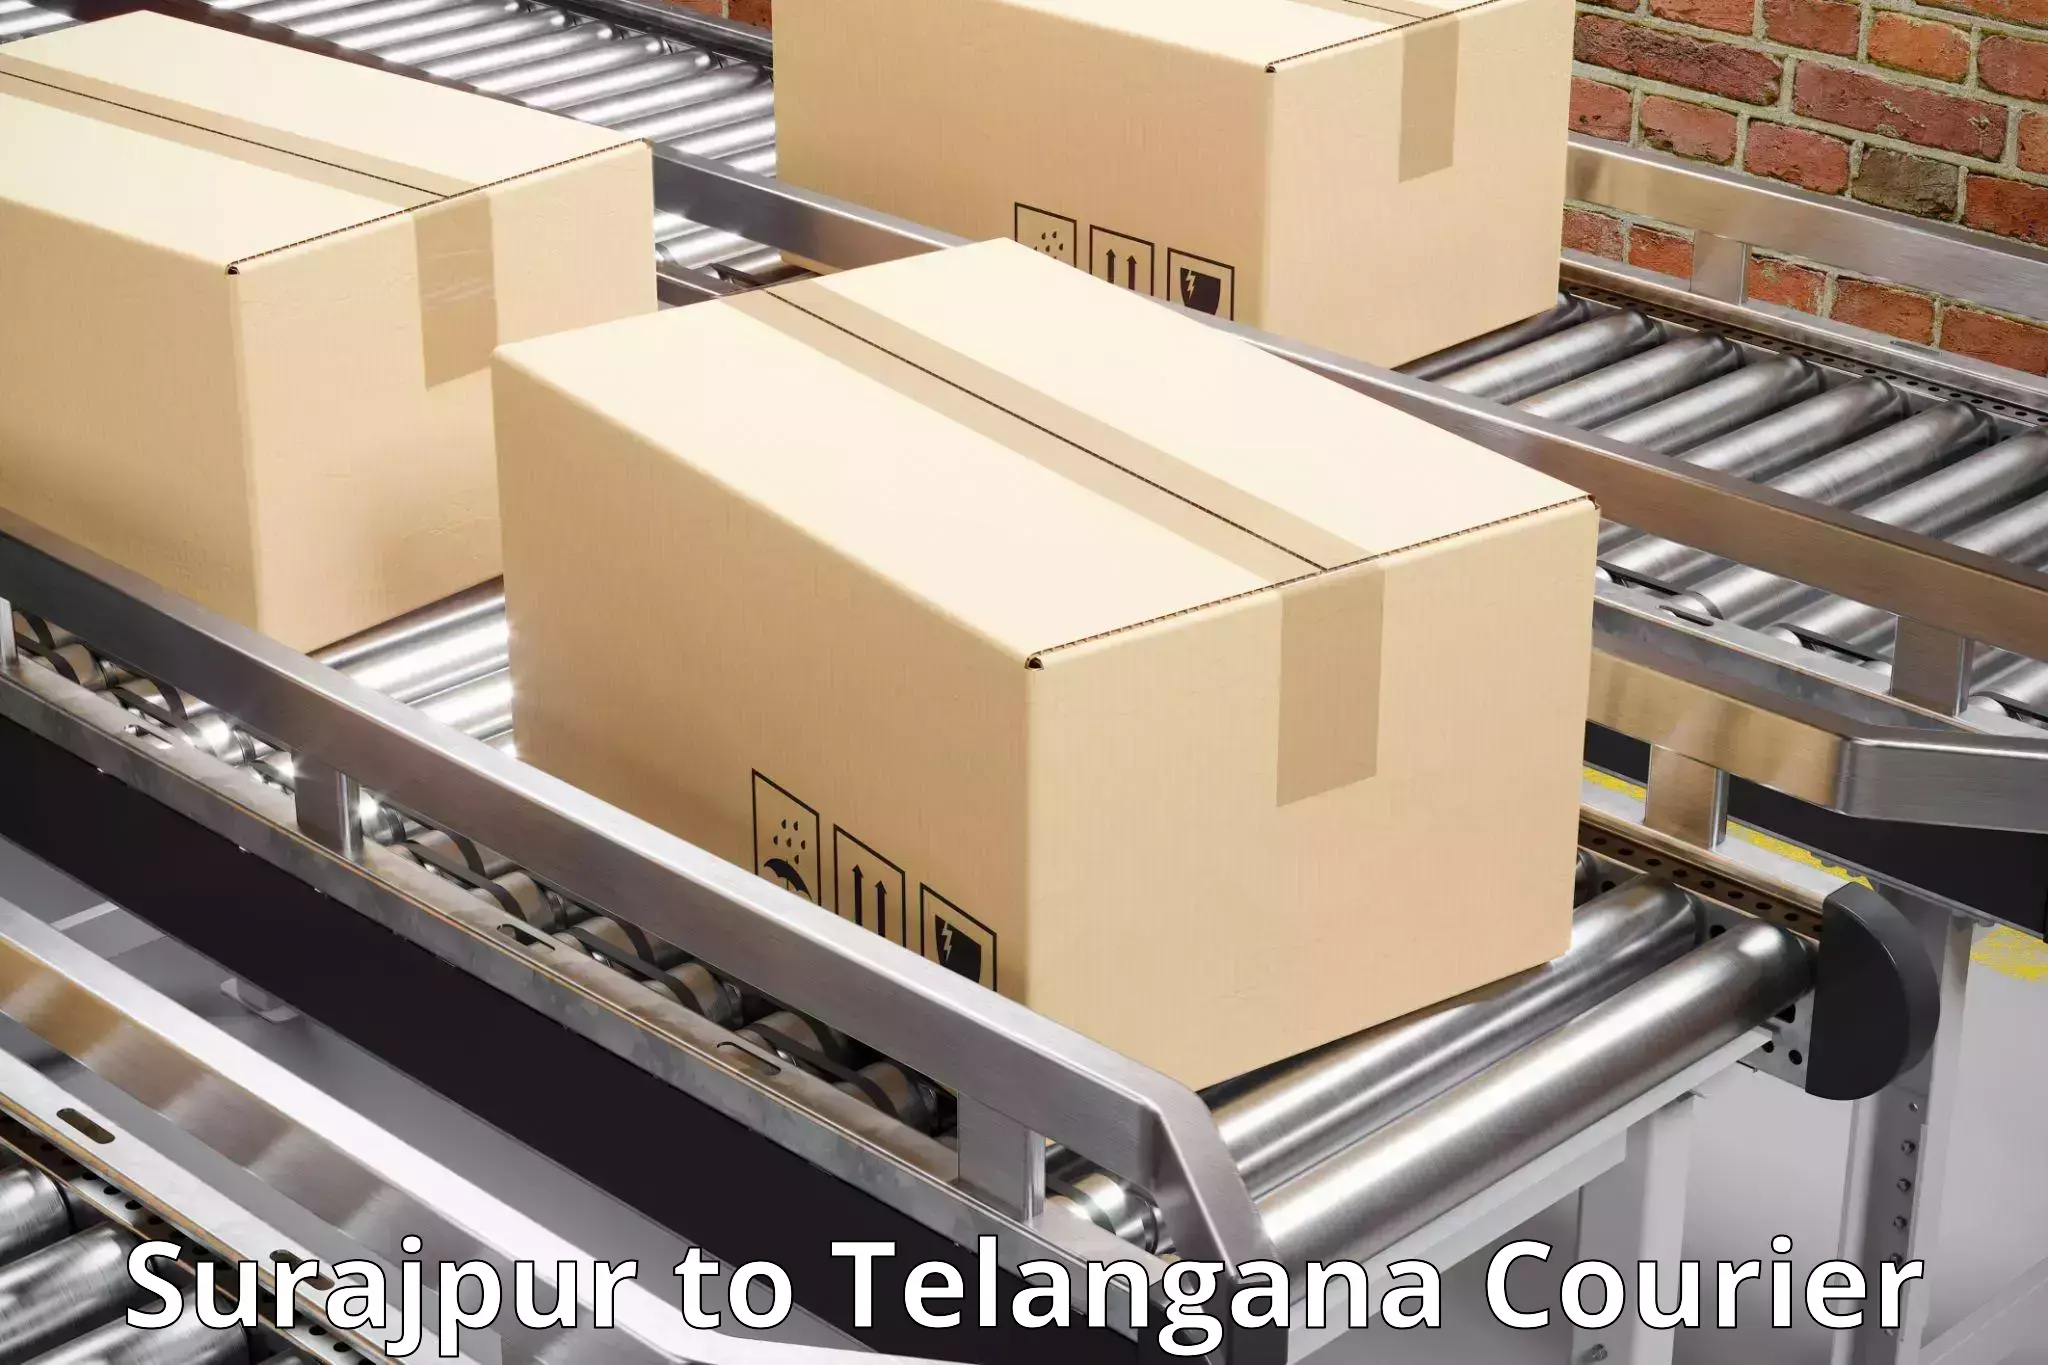 Small parcel delivery Surajpur to Balanagar